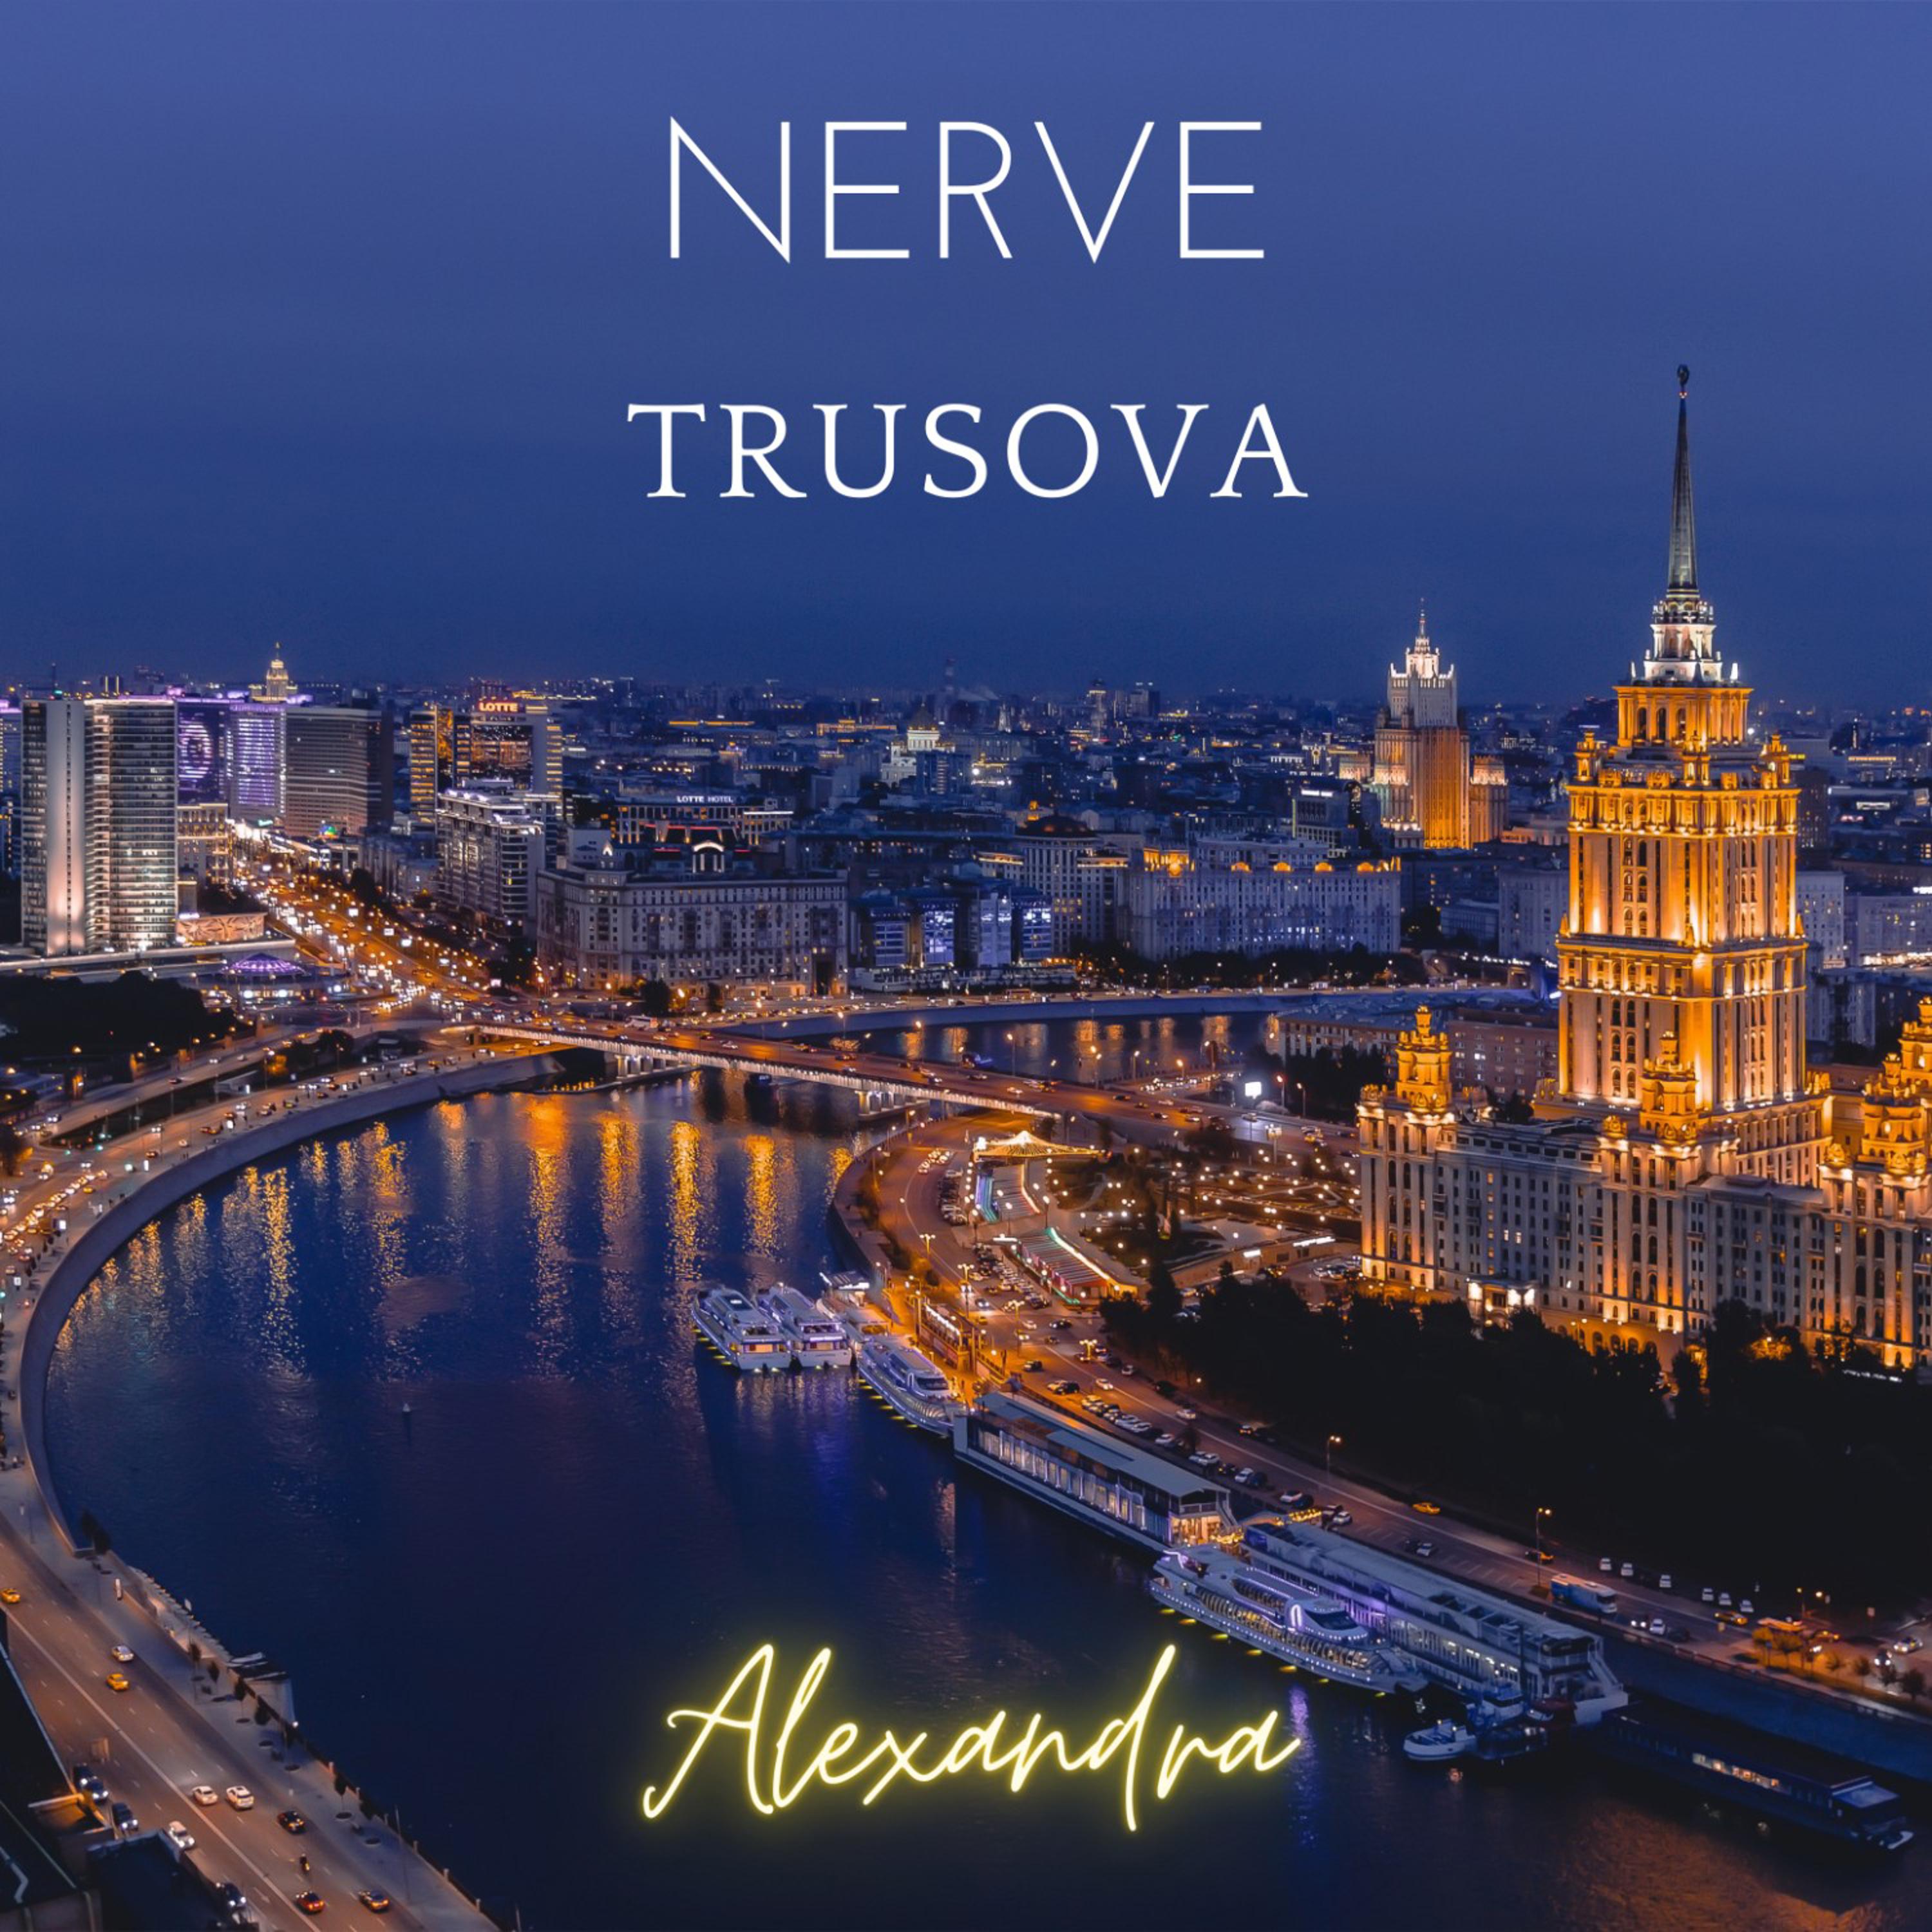 Nerve - Trusova